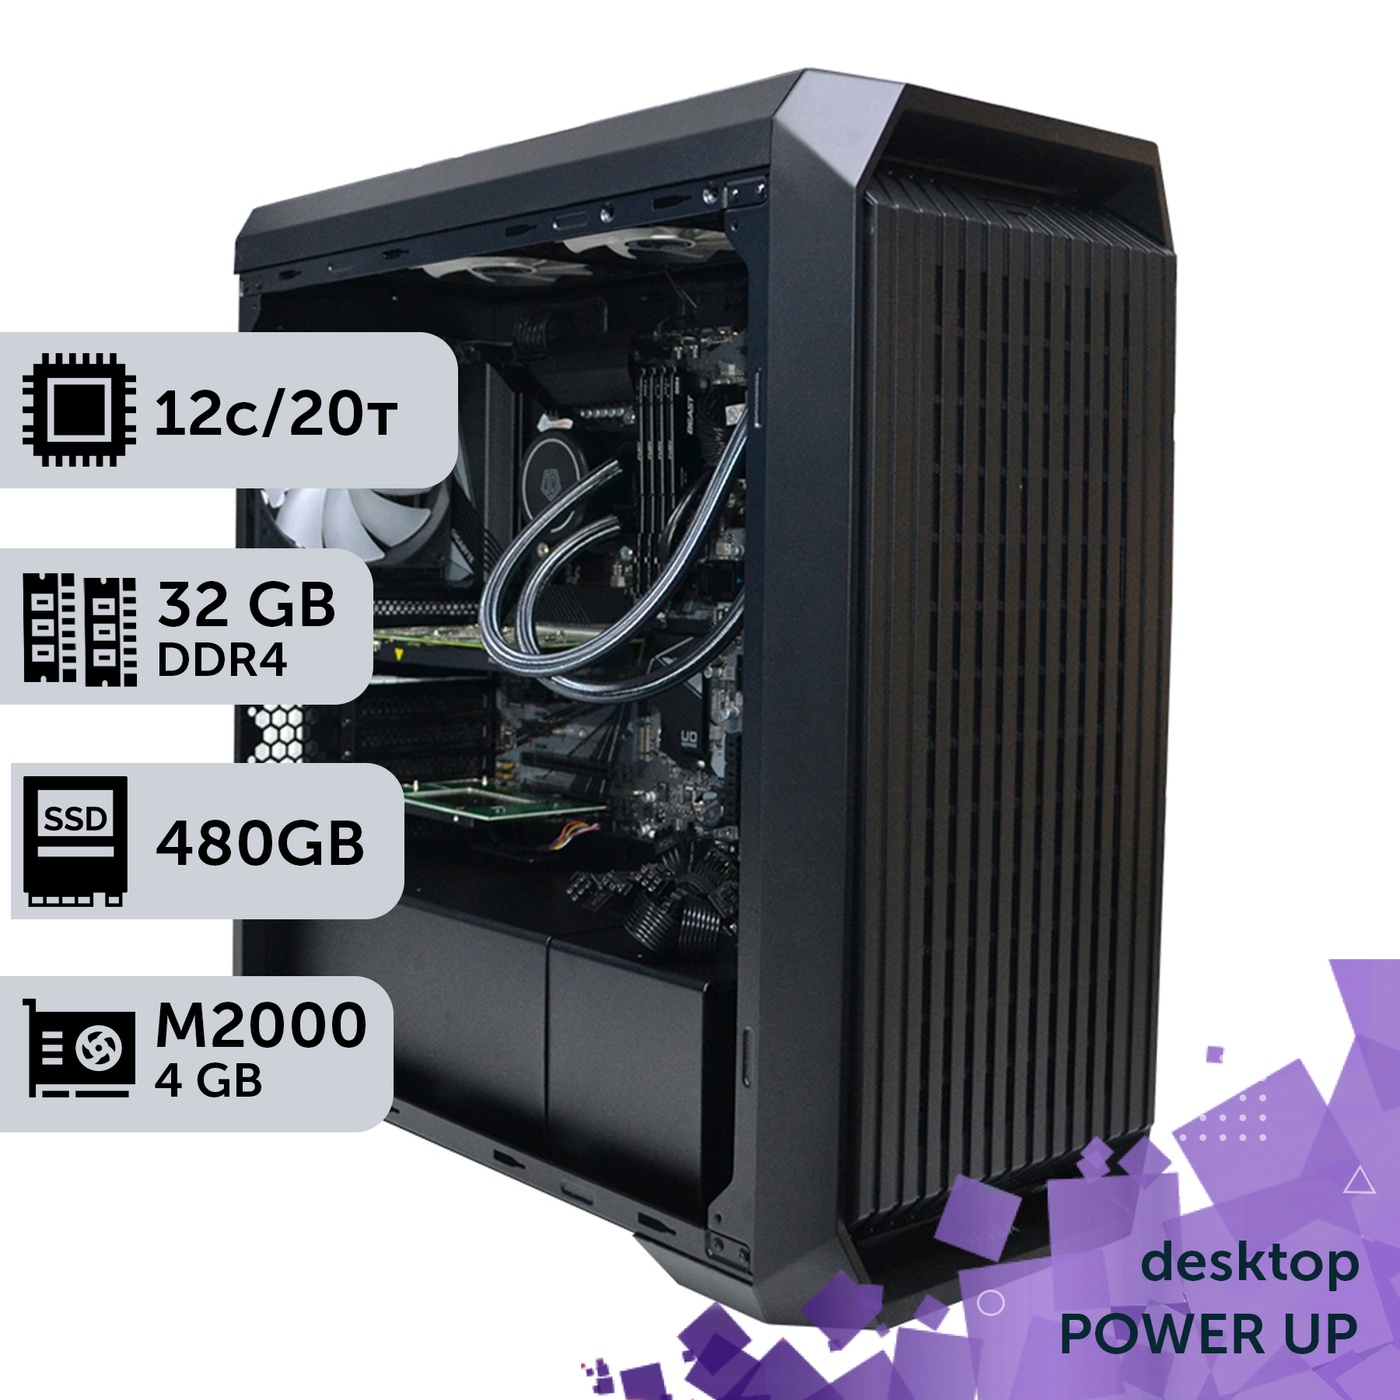 Рабочая станция PowerUp Desktop #146 Core i7 12700K/32 GB/SSD 512GB/NVIDIA Quadro M2000 4GB